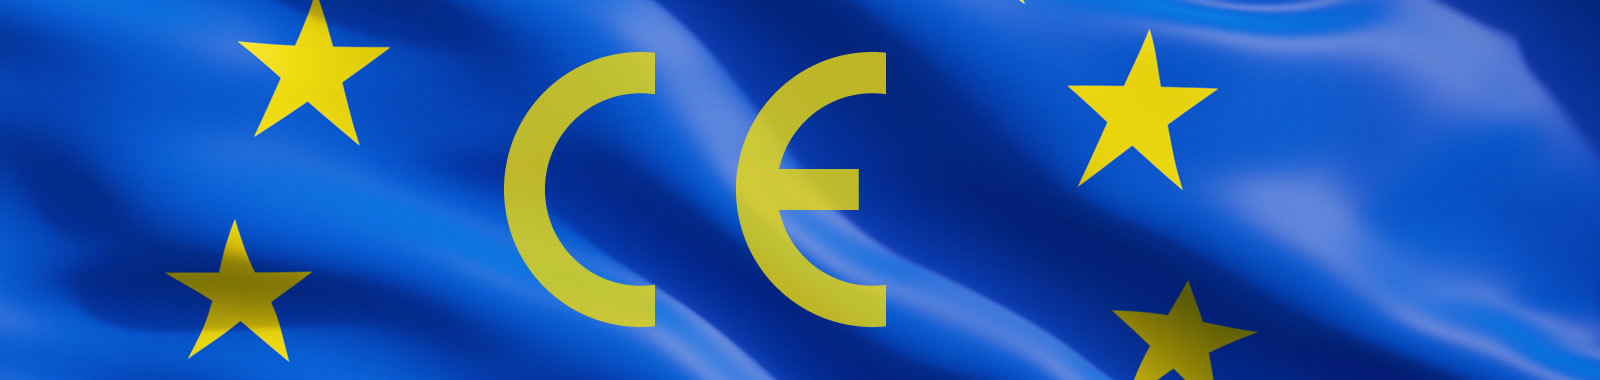 欧盟商品合规性指南：CE标志